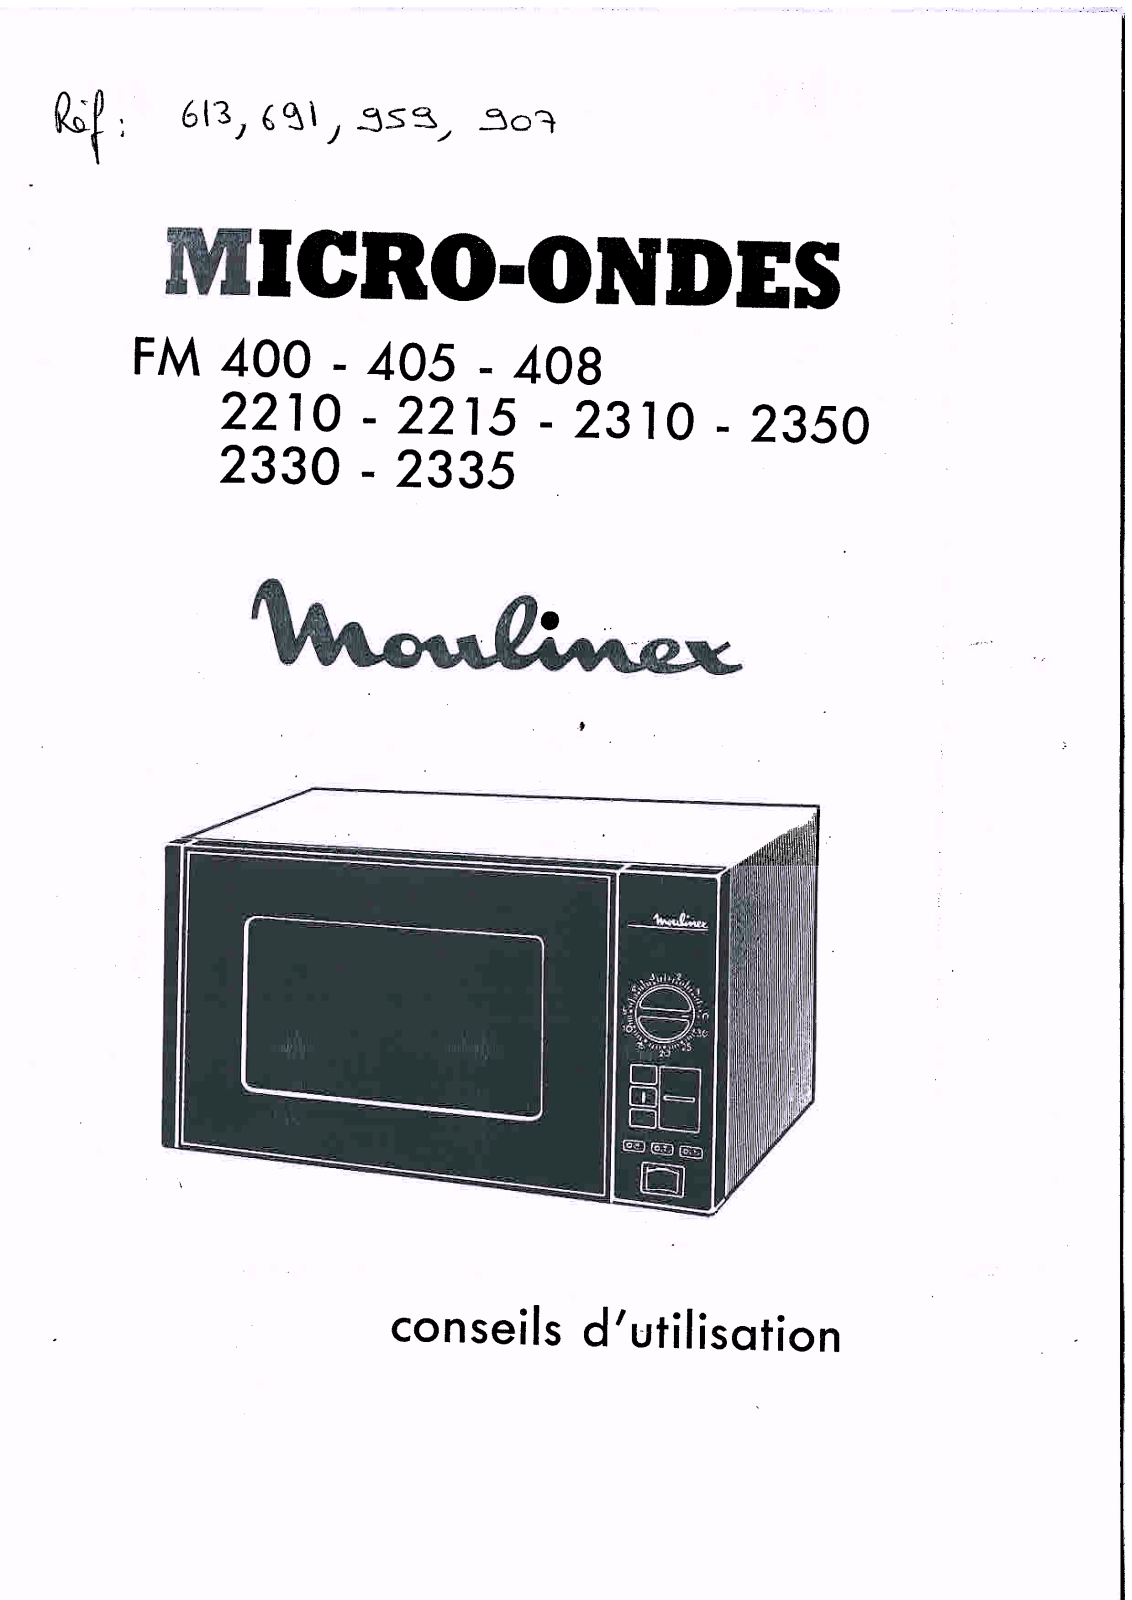 MOULINEX FM400 User Manual